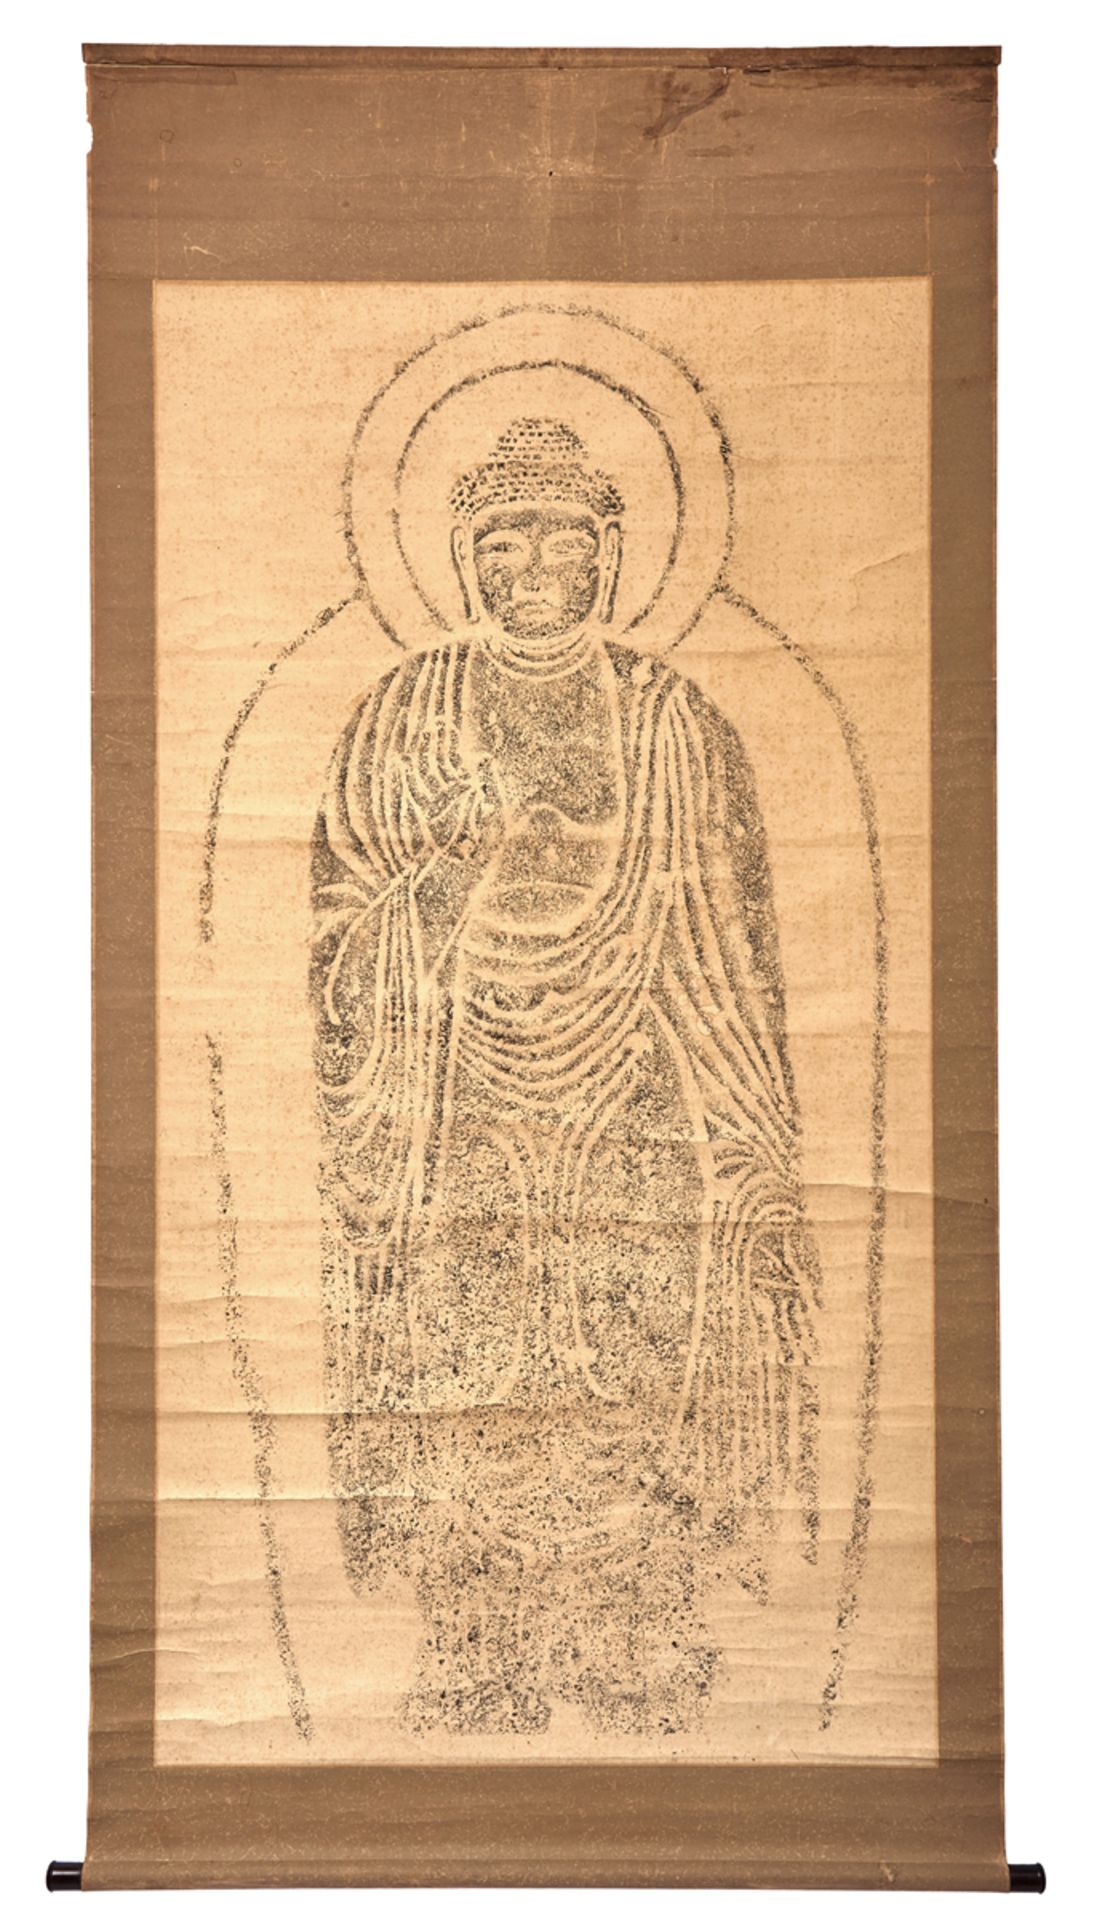 A large rubbing of Buddha Sakyamuni